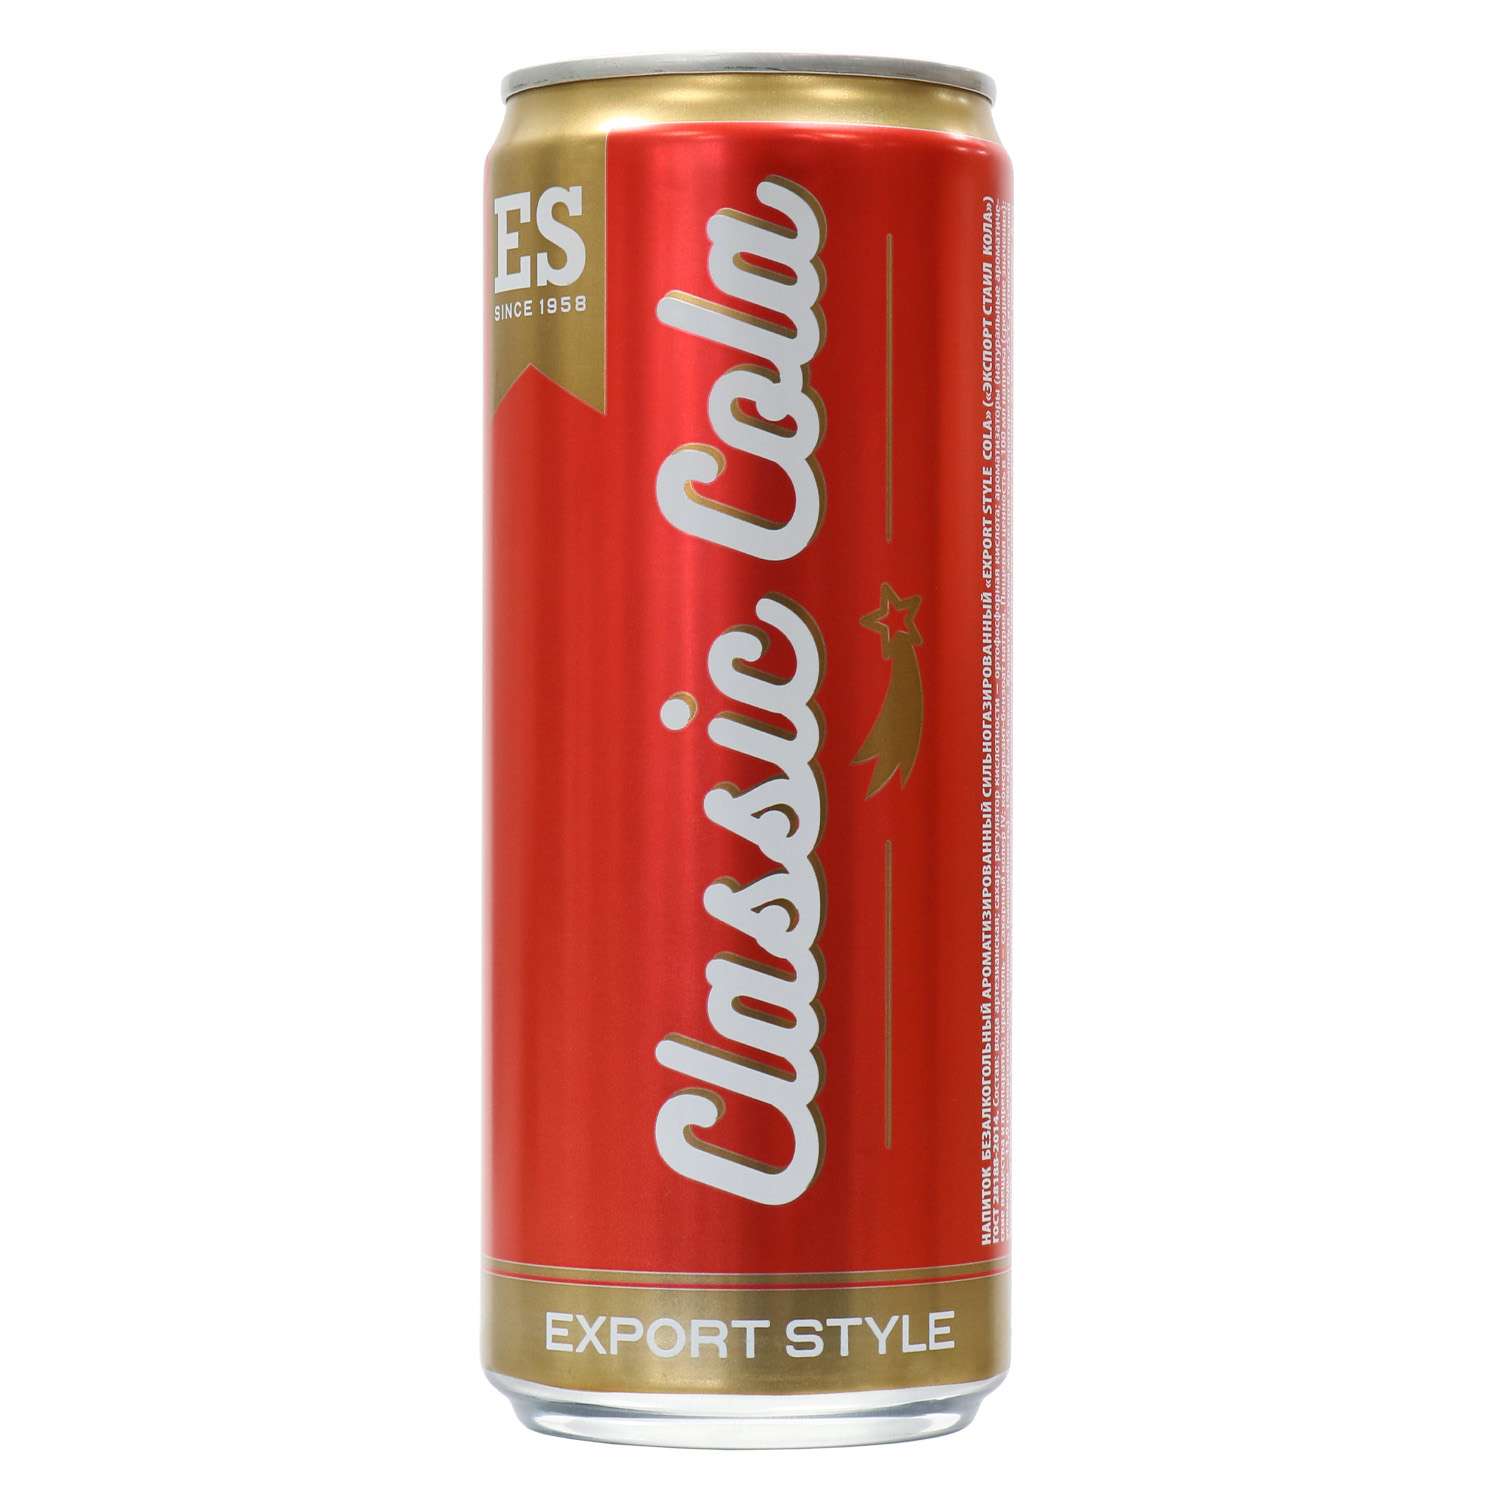 Напиток б/а "Export Style Cola"("экспорт стаил кола") 0,33л ж/б. Classic Cola Export Style (Классик кола экспорт стайл). Кока-кола 0.33 ж/б. Classic Cola Export Style 2 л. Купить классик в россии